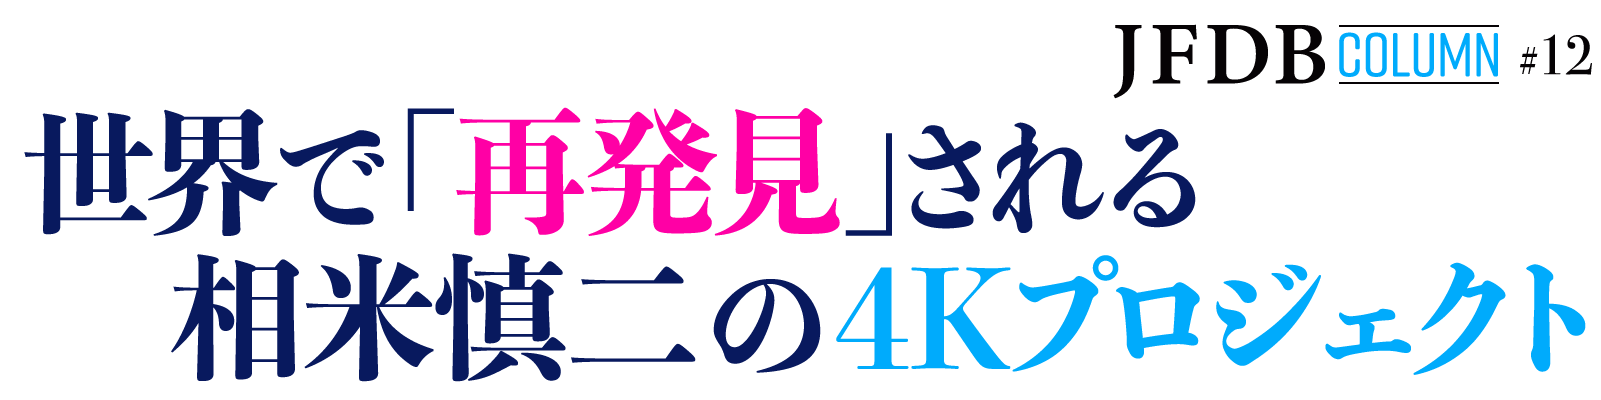 世界で「再発見」される相米慎二の4Kプロジェクト - JFDB Column #12